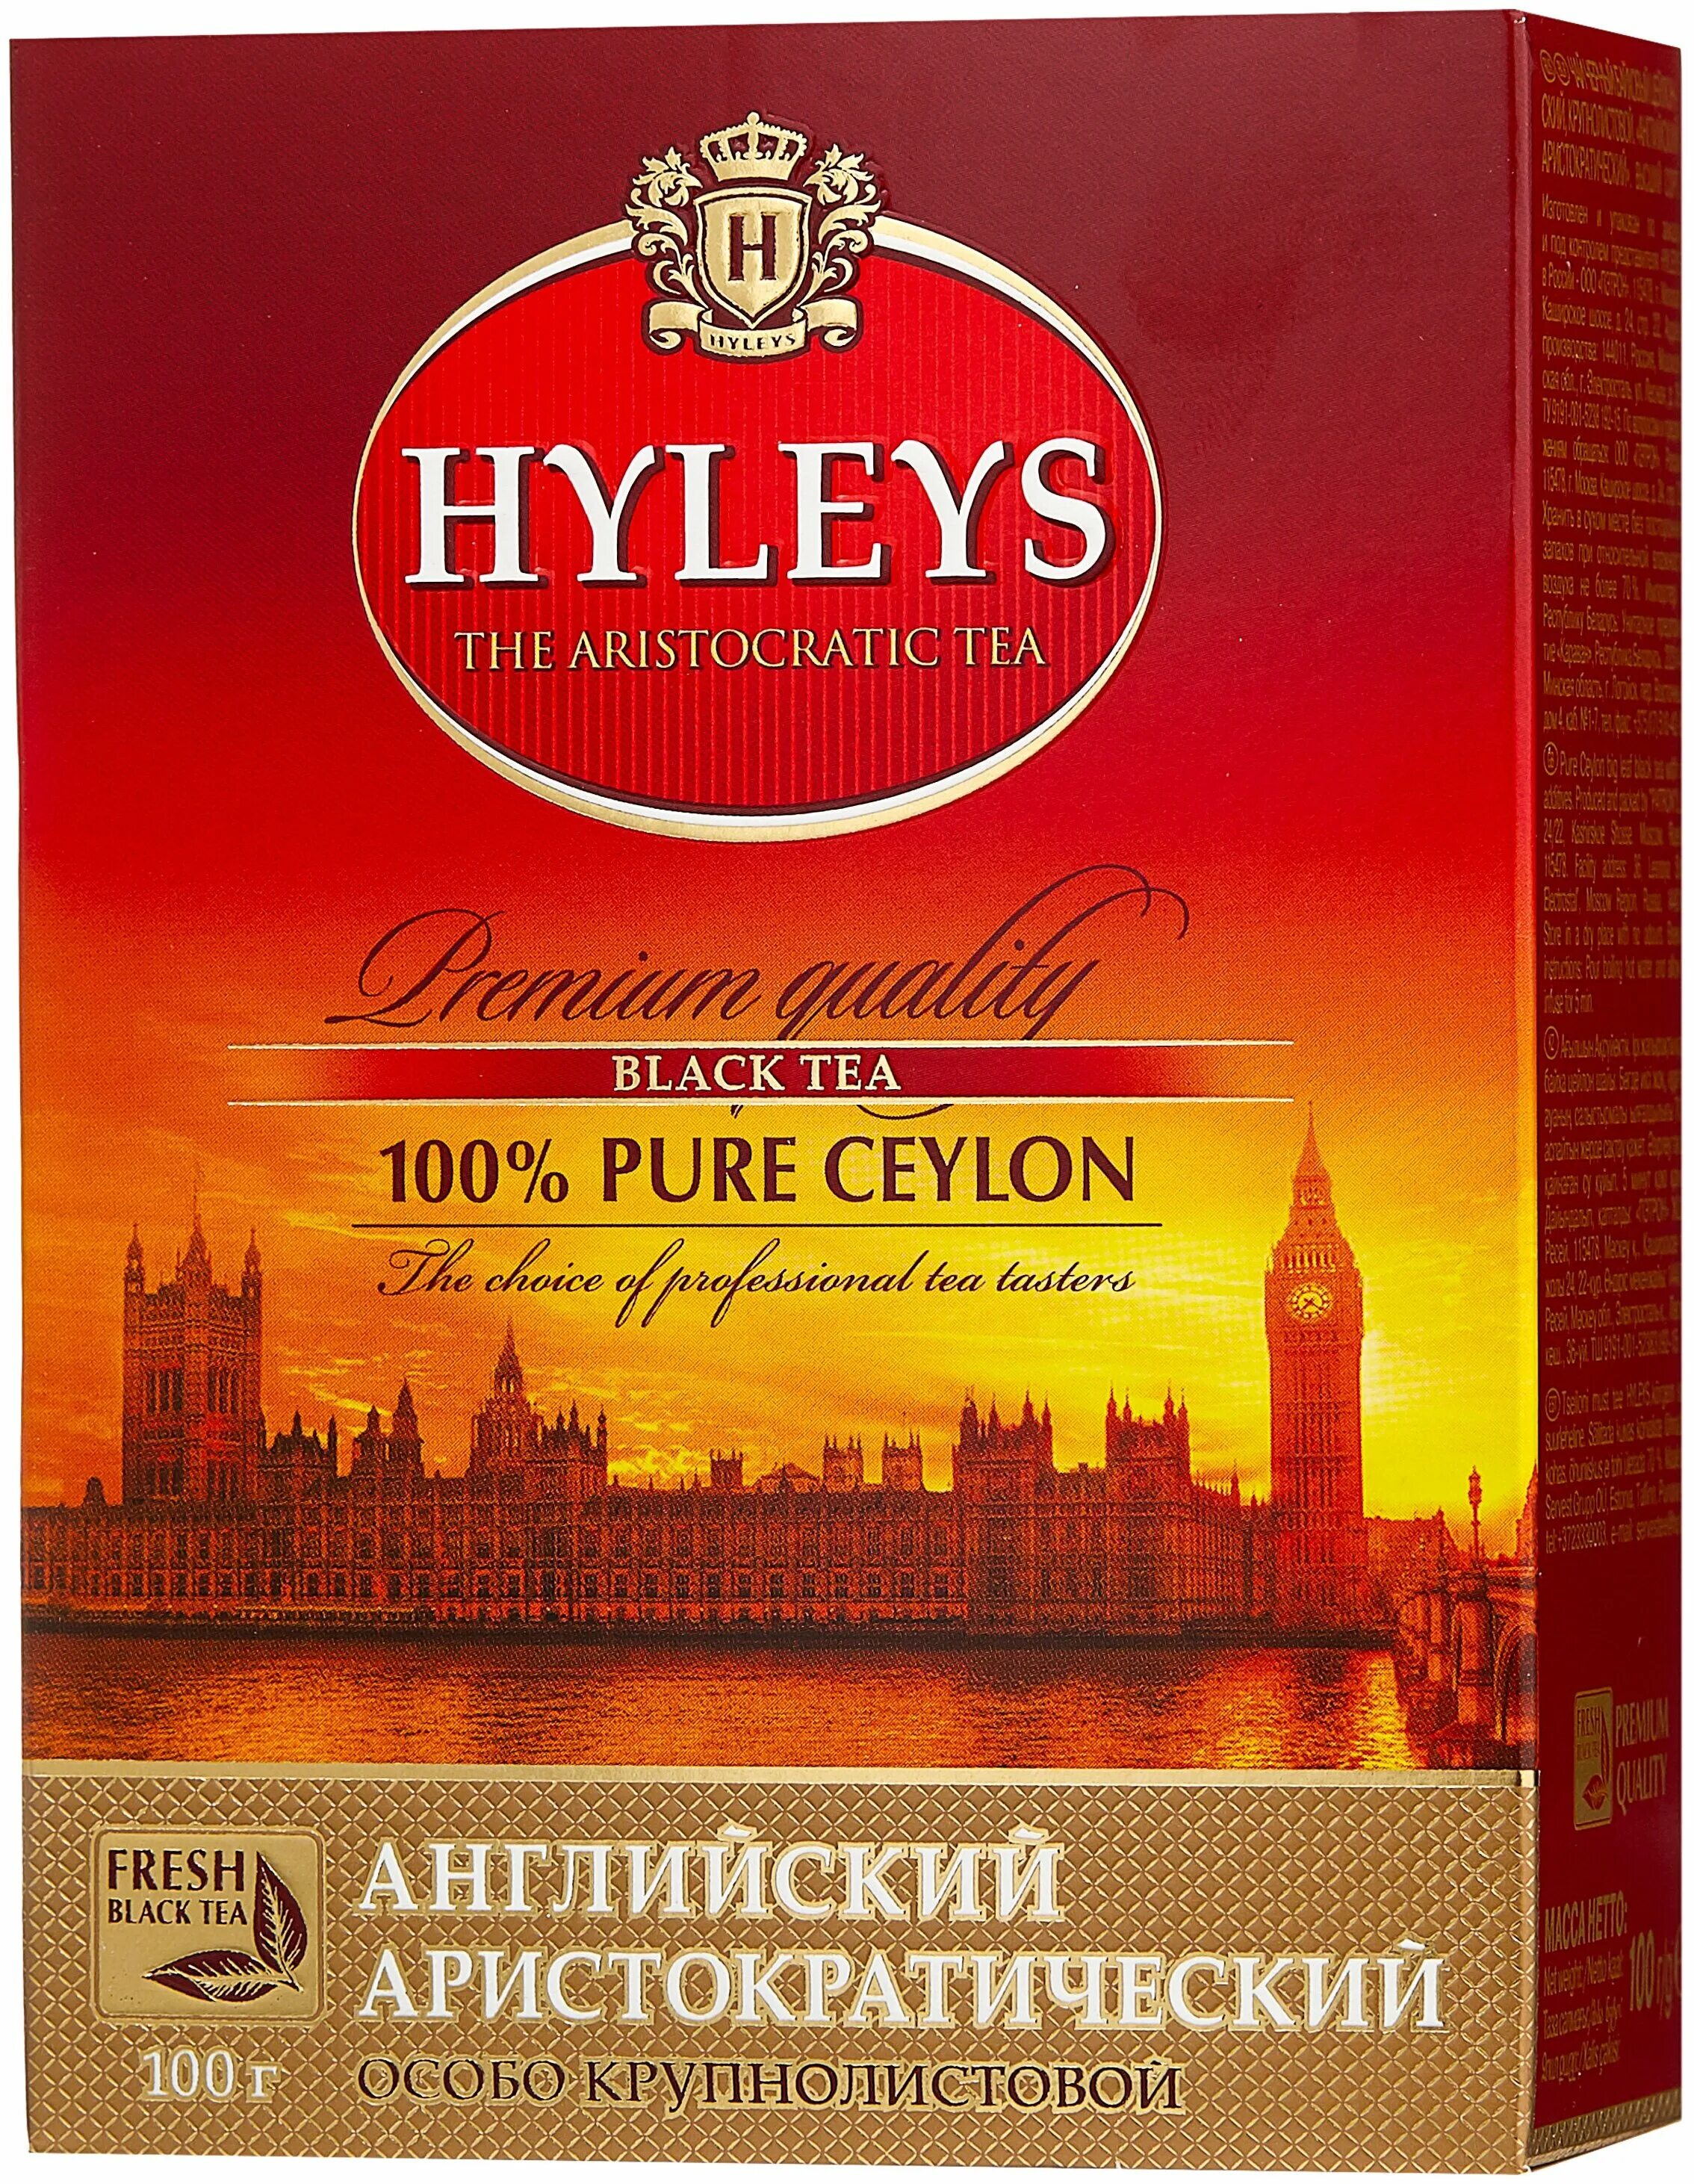 Купить чай в ленте. Чай hyleys английский аристократический 250. Чай Хэйлис английский аристократический. Чай черный hyleys. Чай черный крупнолистовой hyleys.